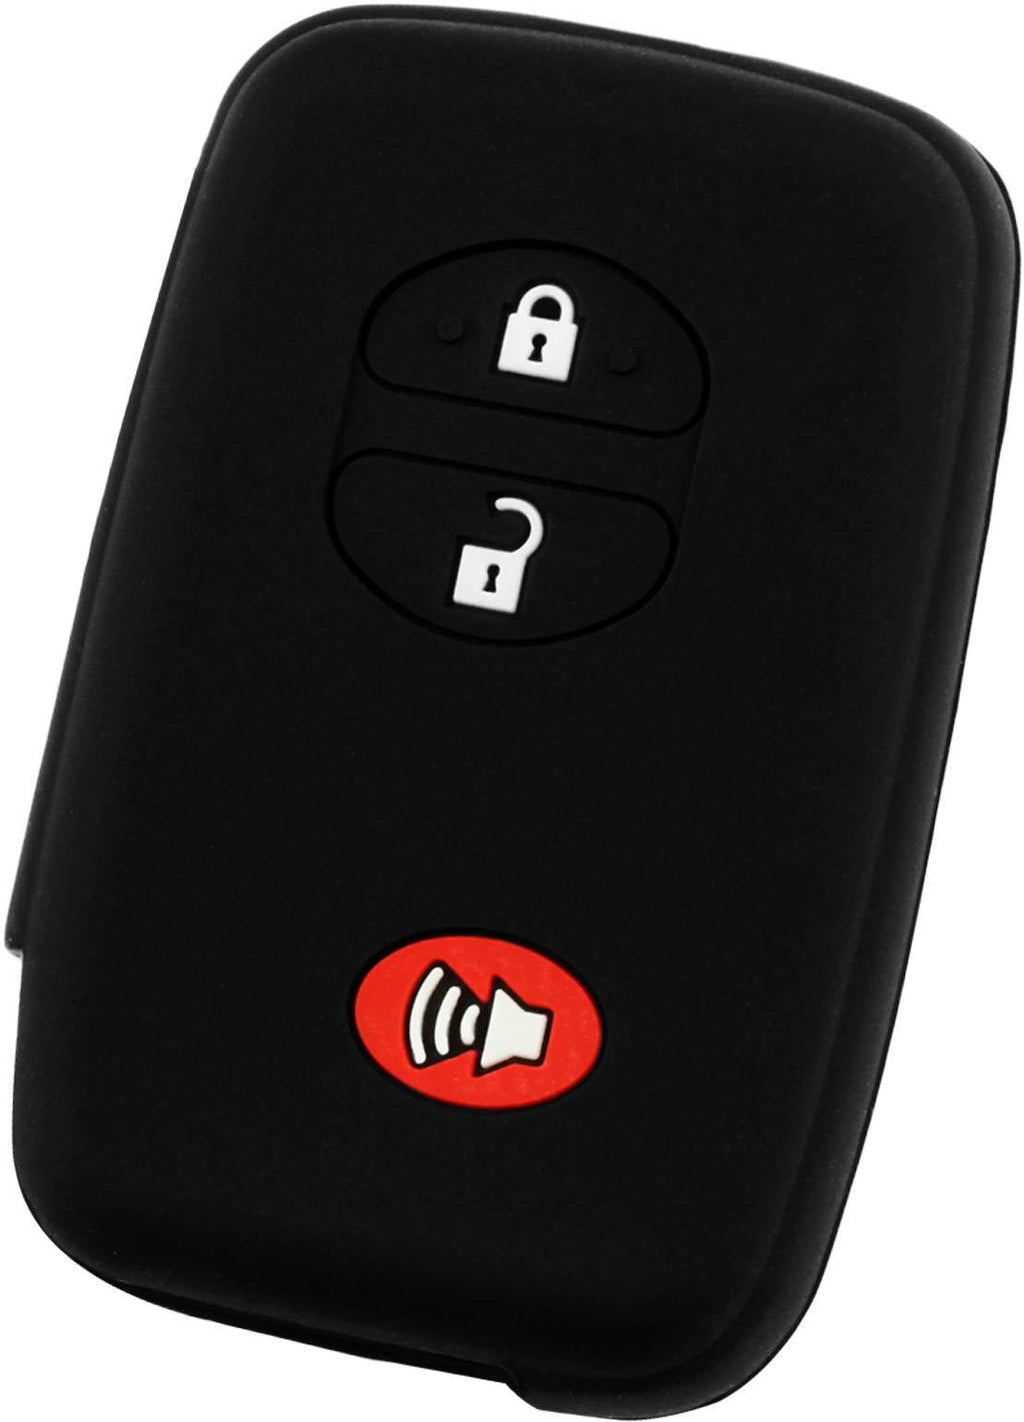  [AUSTRALIA] - KeyGuardz Keyless Entry Remote Car Smart Key Fob Shell Cover Soft Rubber Case for Toyota Rav4 Highlander Venza 4Runner Landcruiser Black